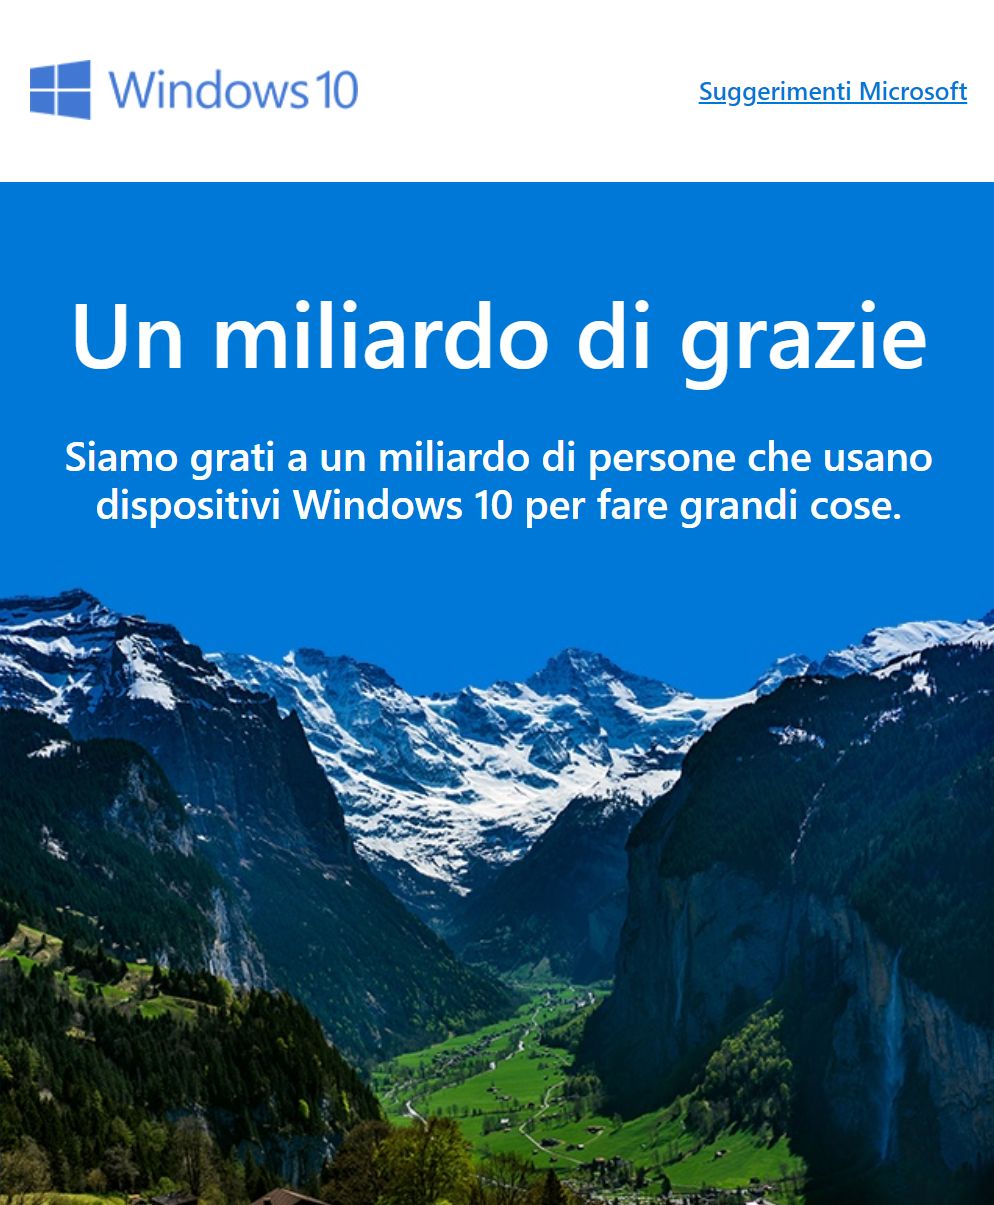 Informacja o miliardzie instalacji z włoskiej strony o Windows 10.